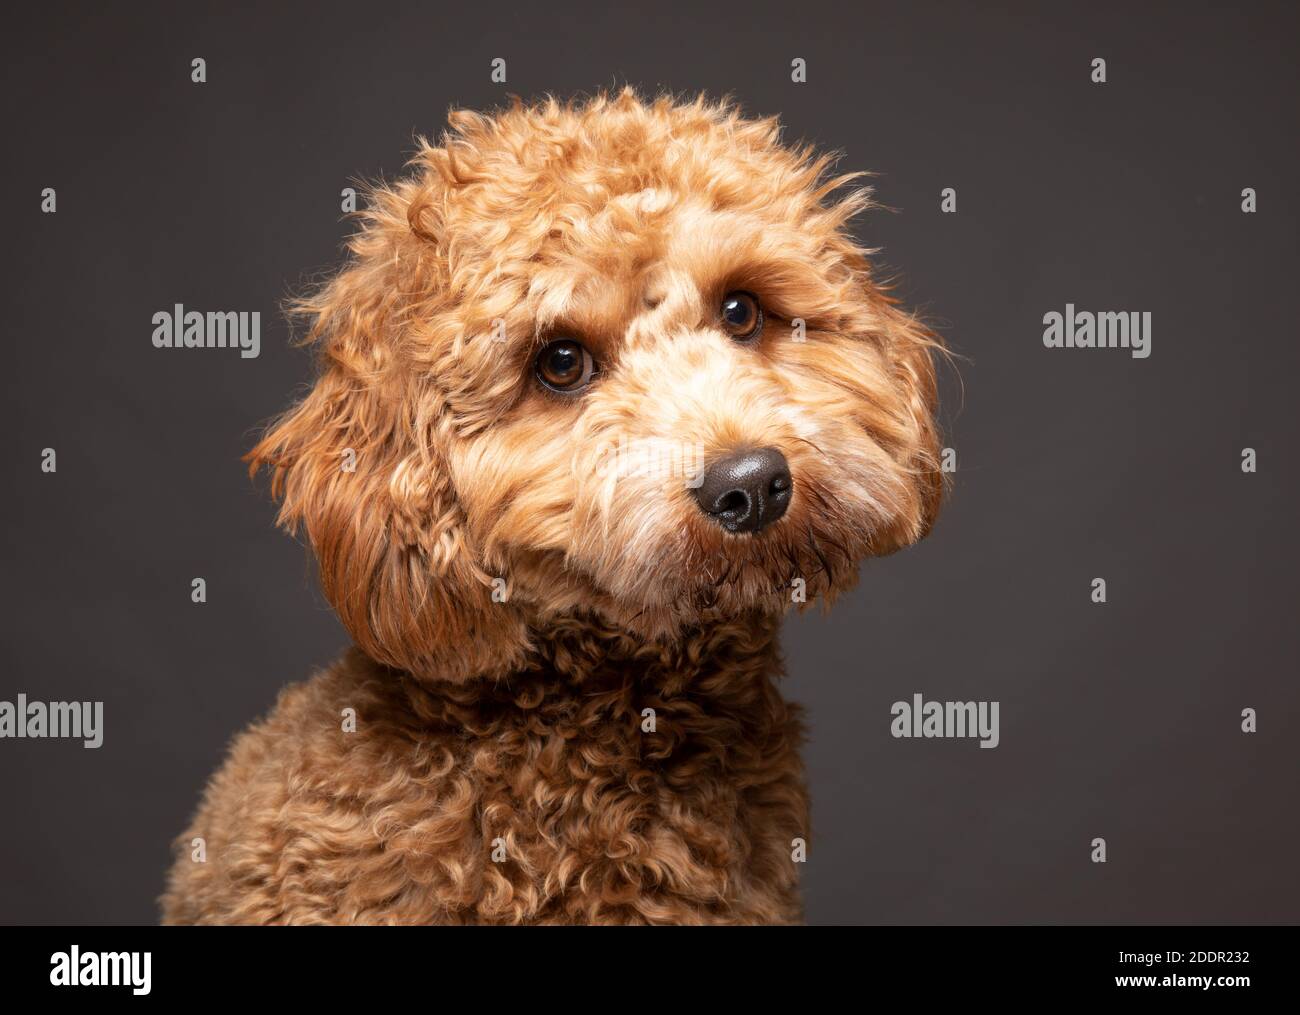 Cavapoo Hund sieht traurig vor einem schlichten grauen Hintergrund. Stockfoto